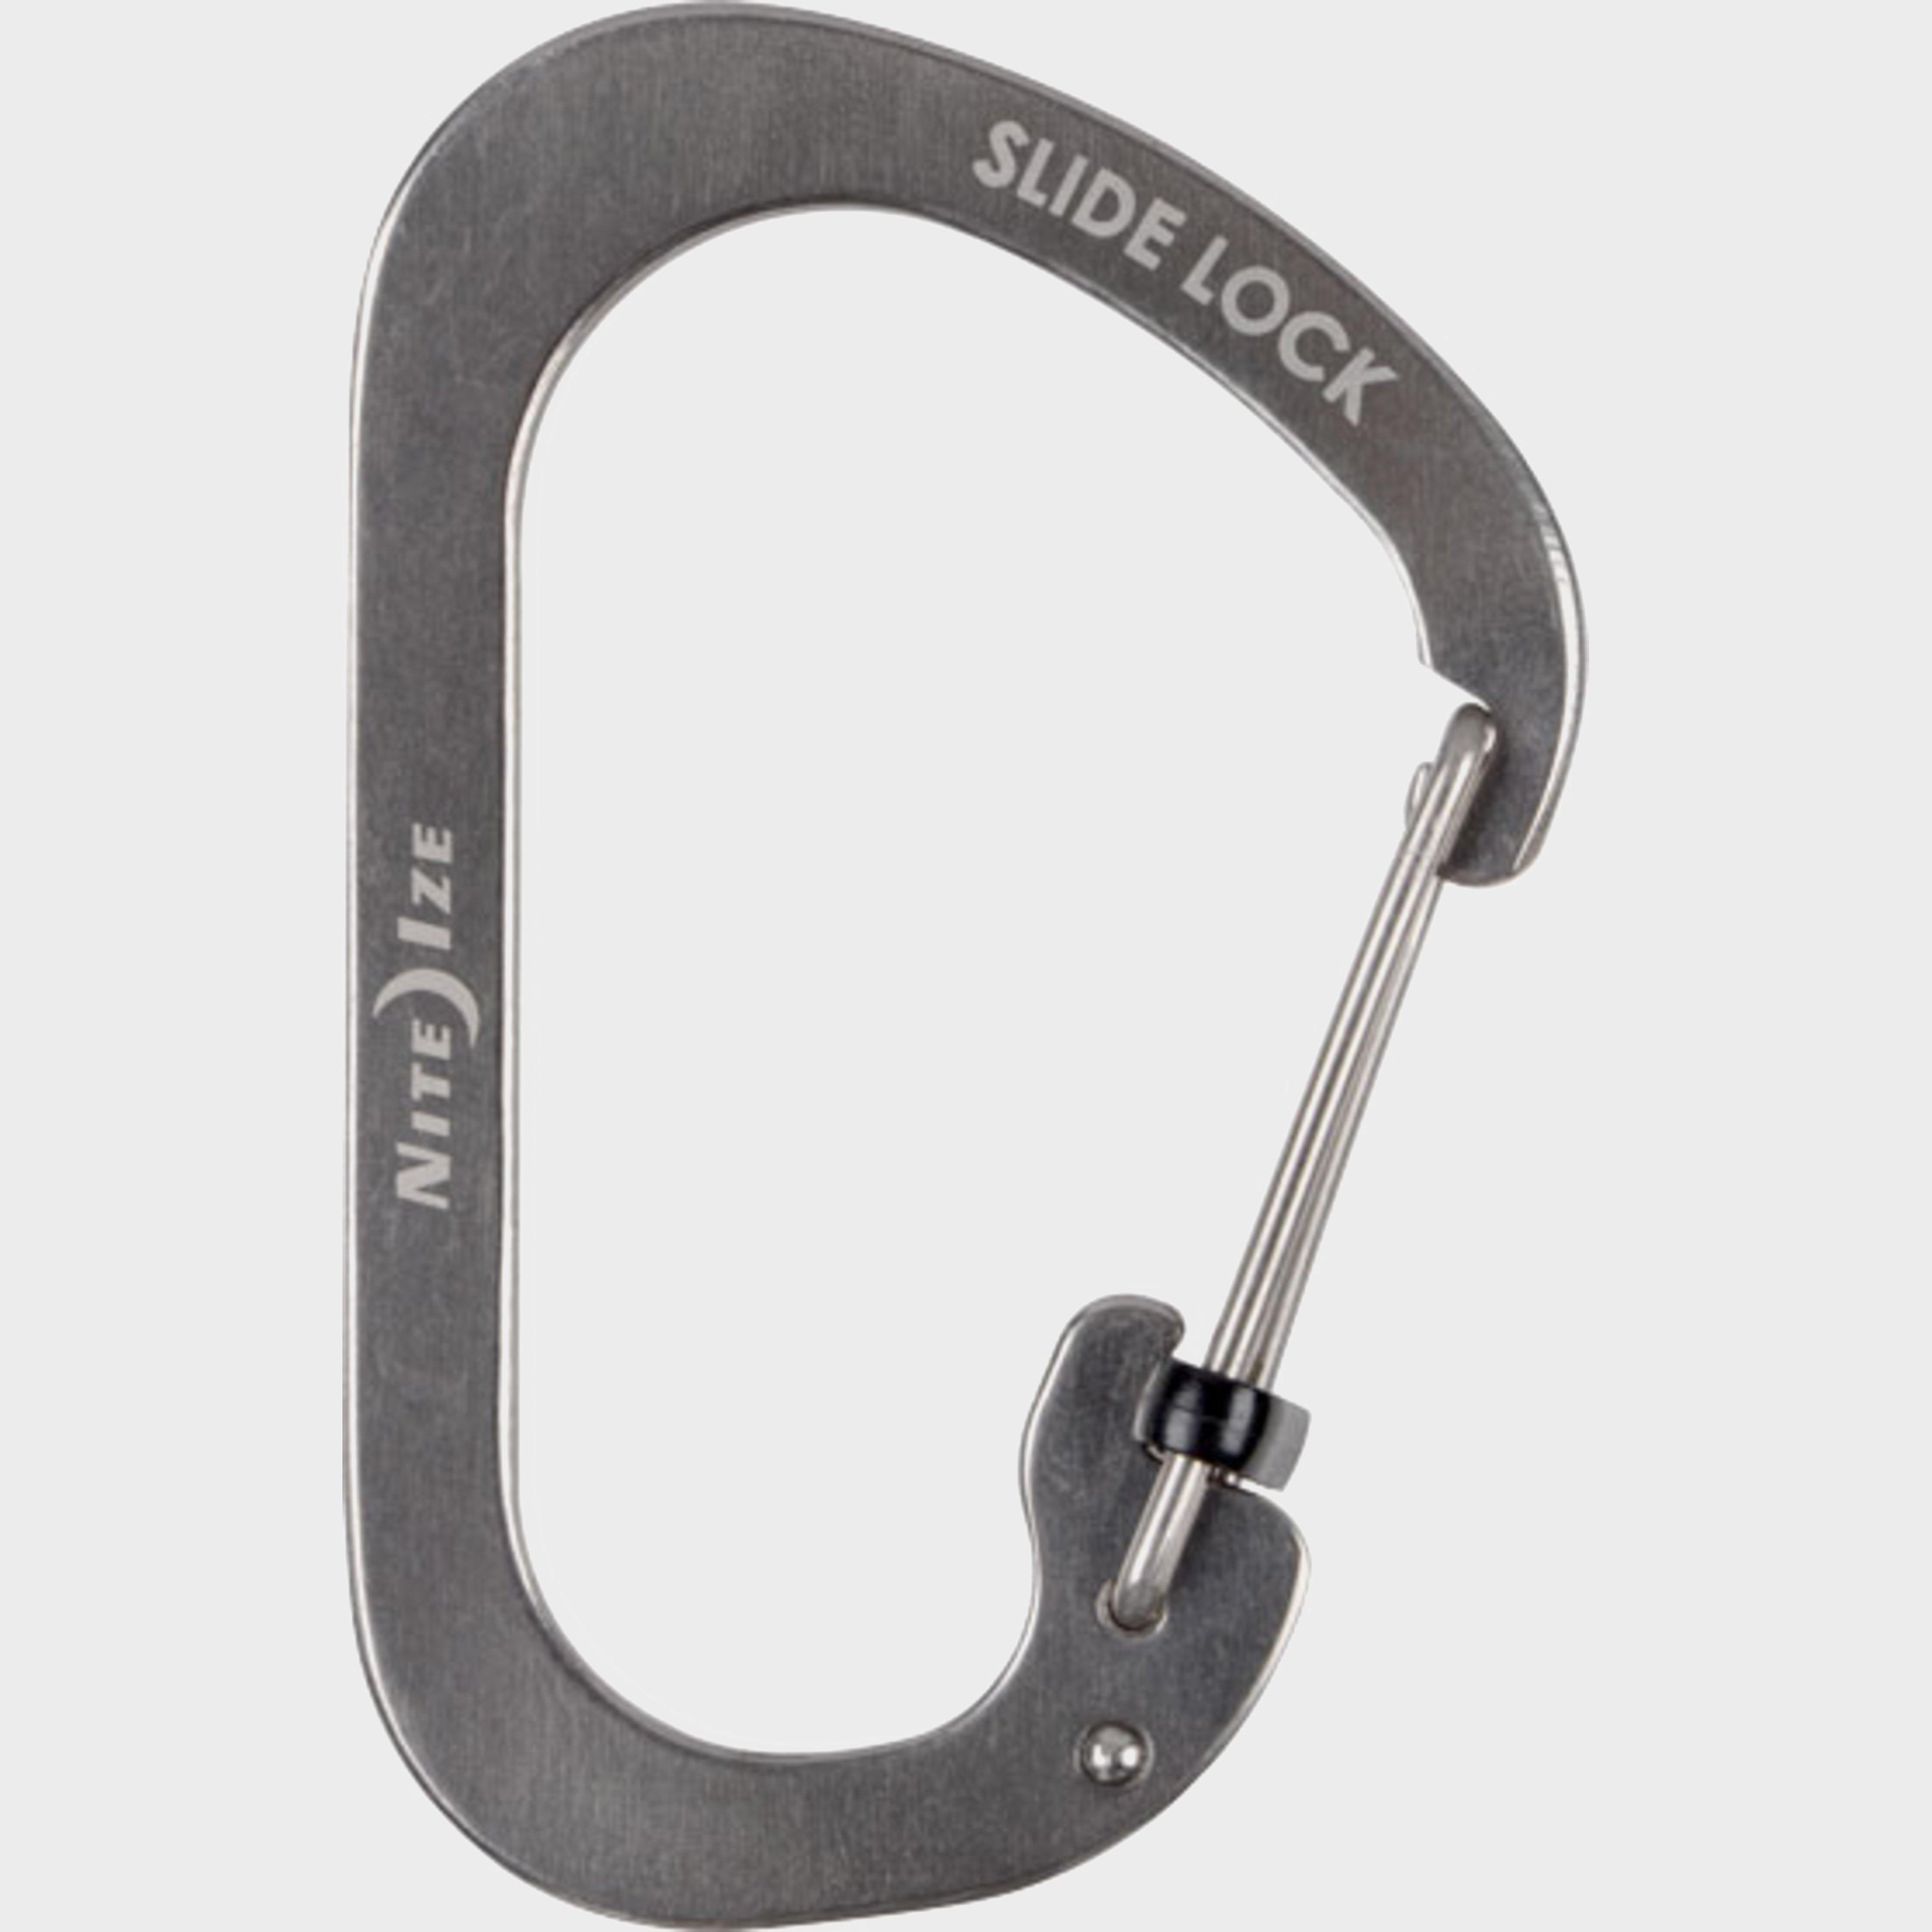 Niteize Slidelock Carabiner #4 (Stainless Steel) - Grey, Grey